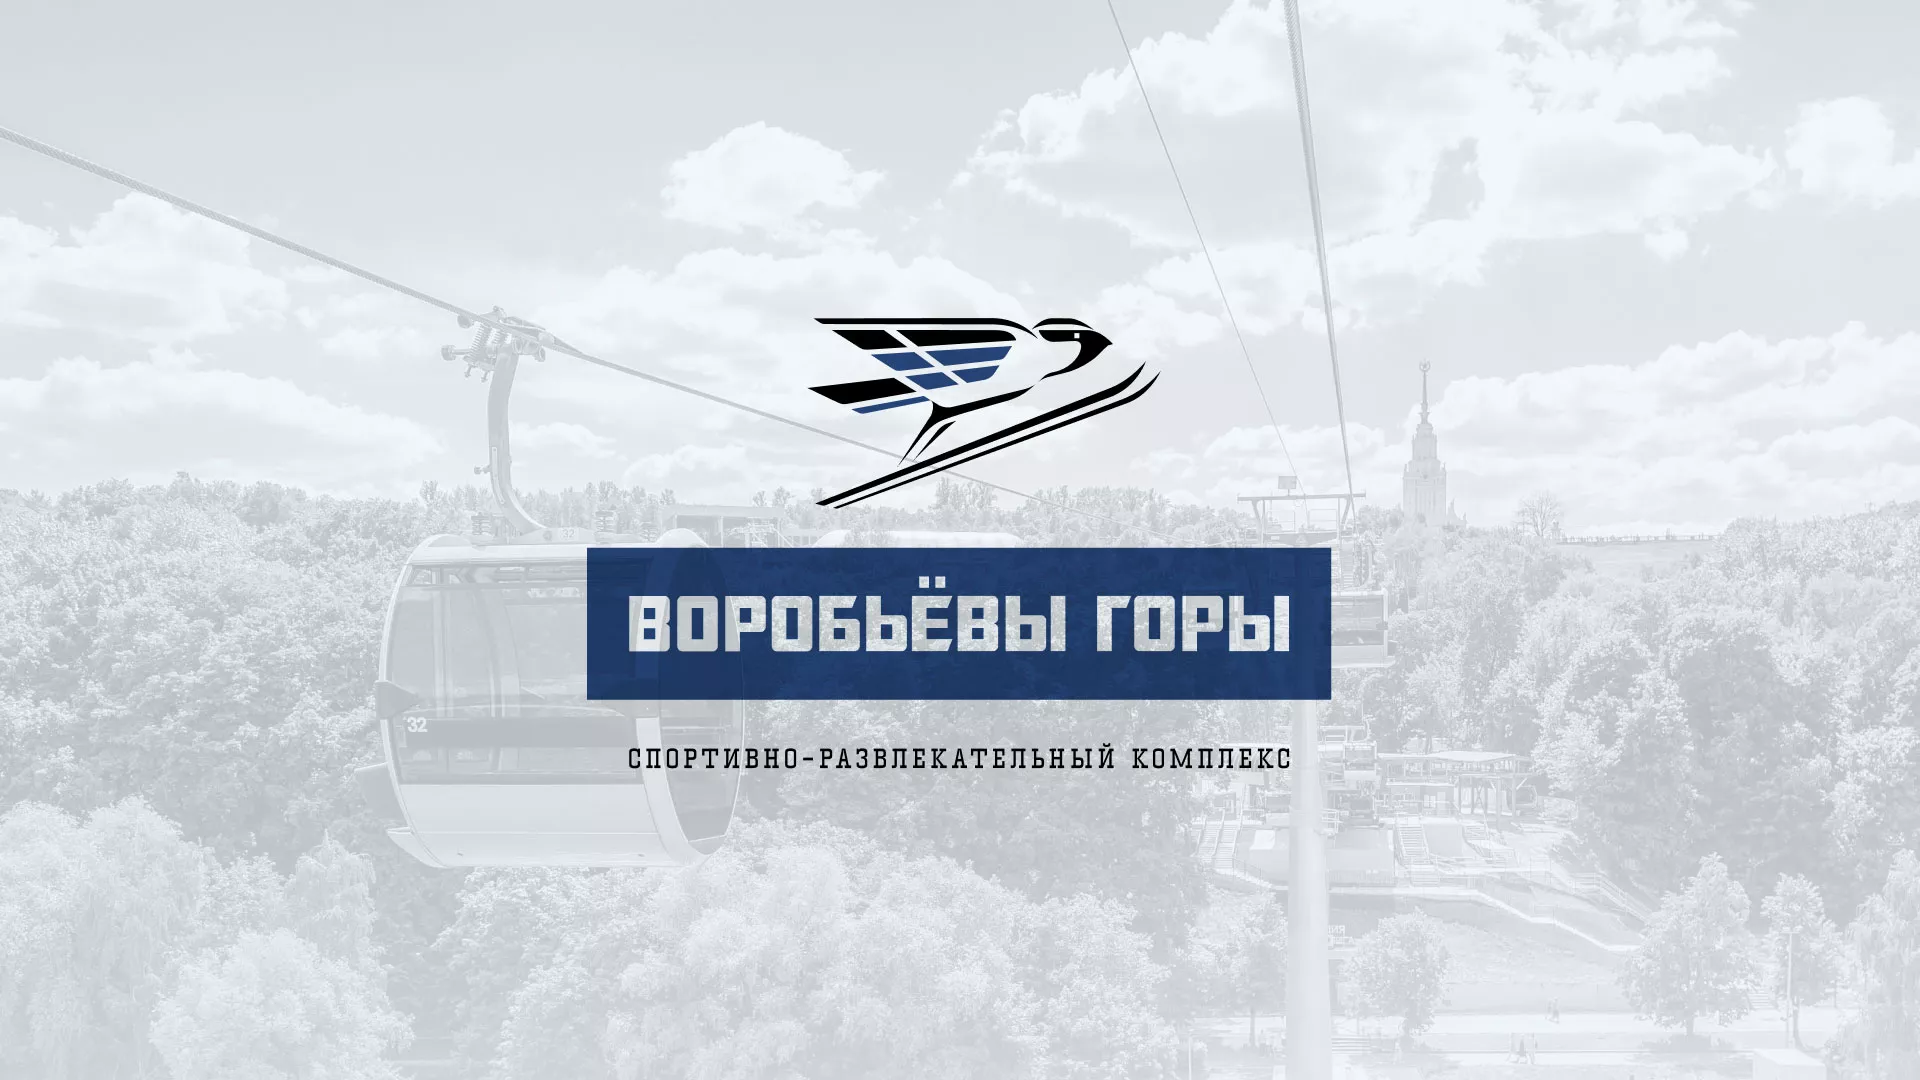 Разработка сайта в Солнечногорске для спортивно-развлекательного комплекса «Воробьёвы горы»